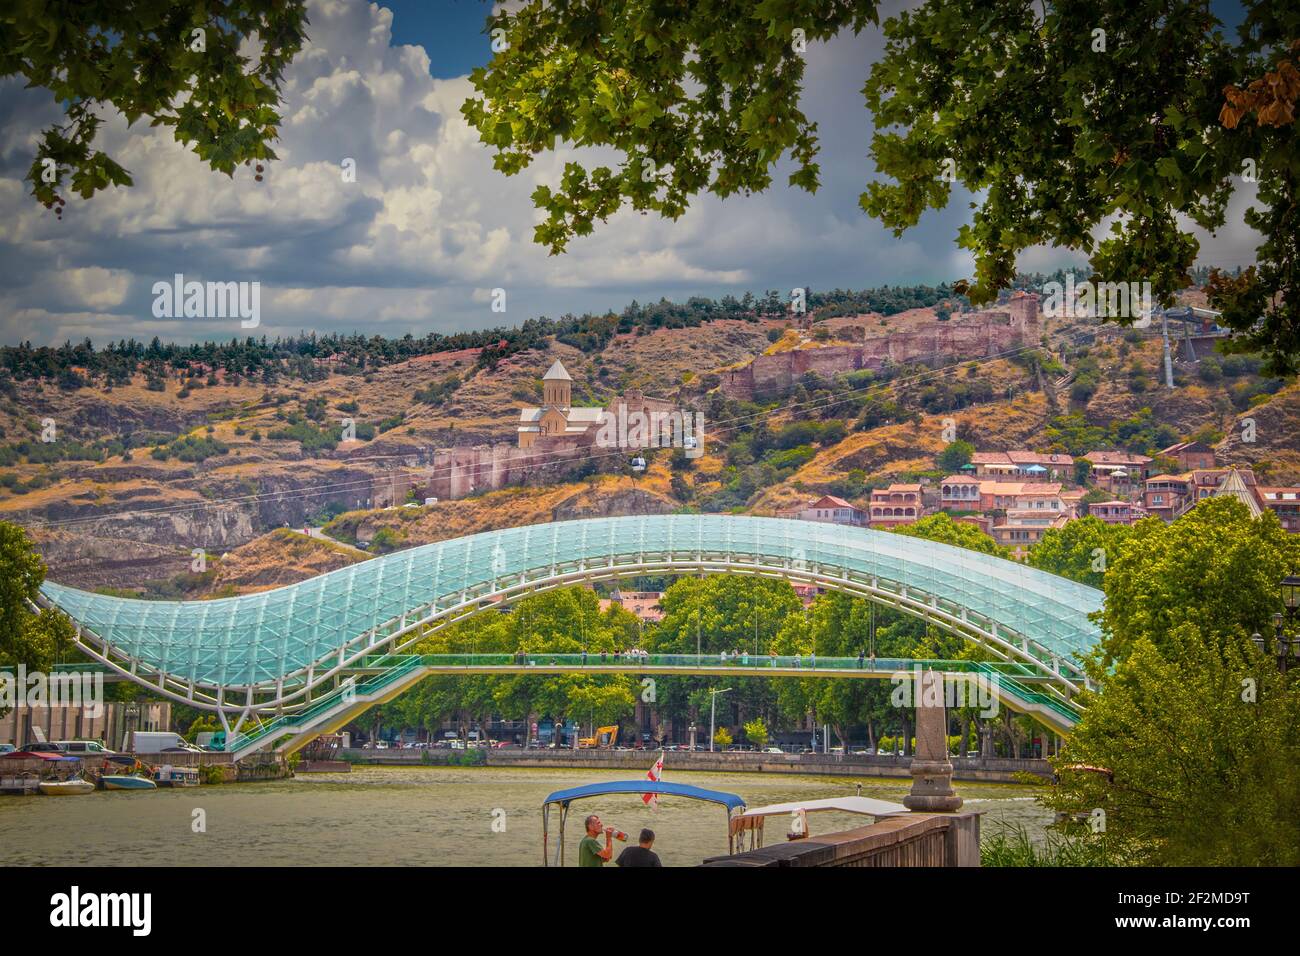 2019 07 19 Tbilisi Georgia - Ponte della Pace con l'antica fortezza di Narikala Si affaccia su Tbilisi e si affaccia sulle rive del fiume Mtkvari - Kura con barca Foto Stock